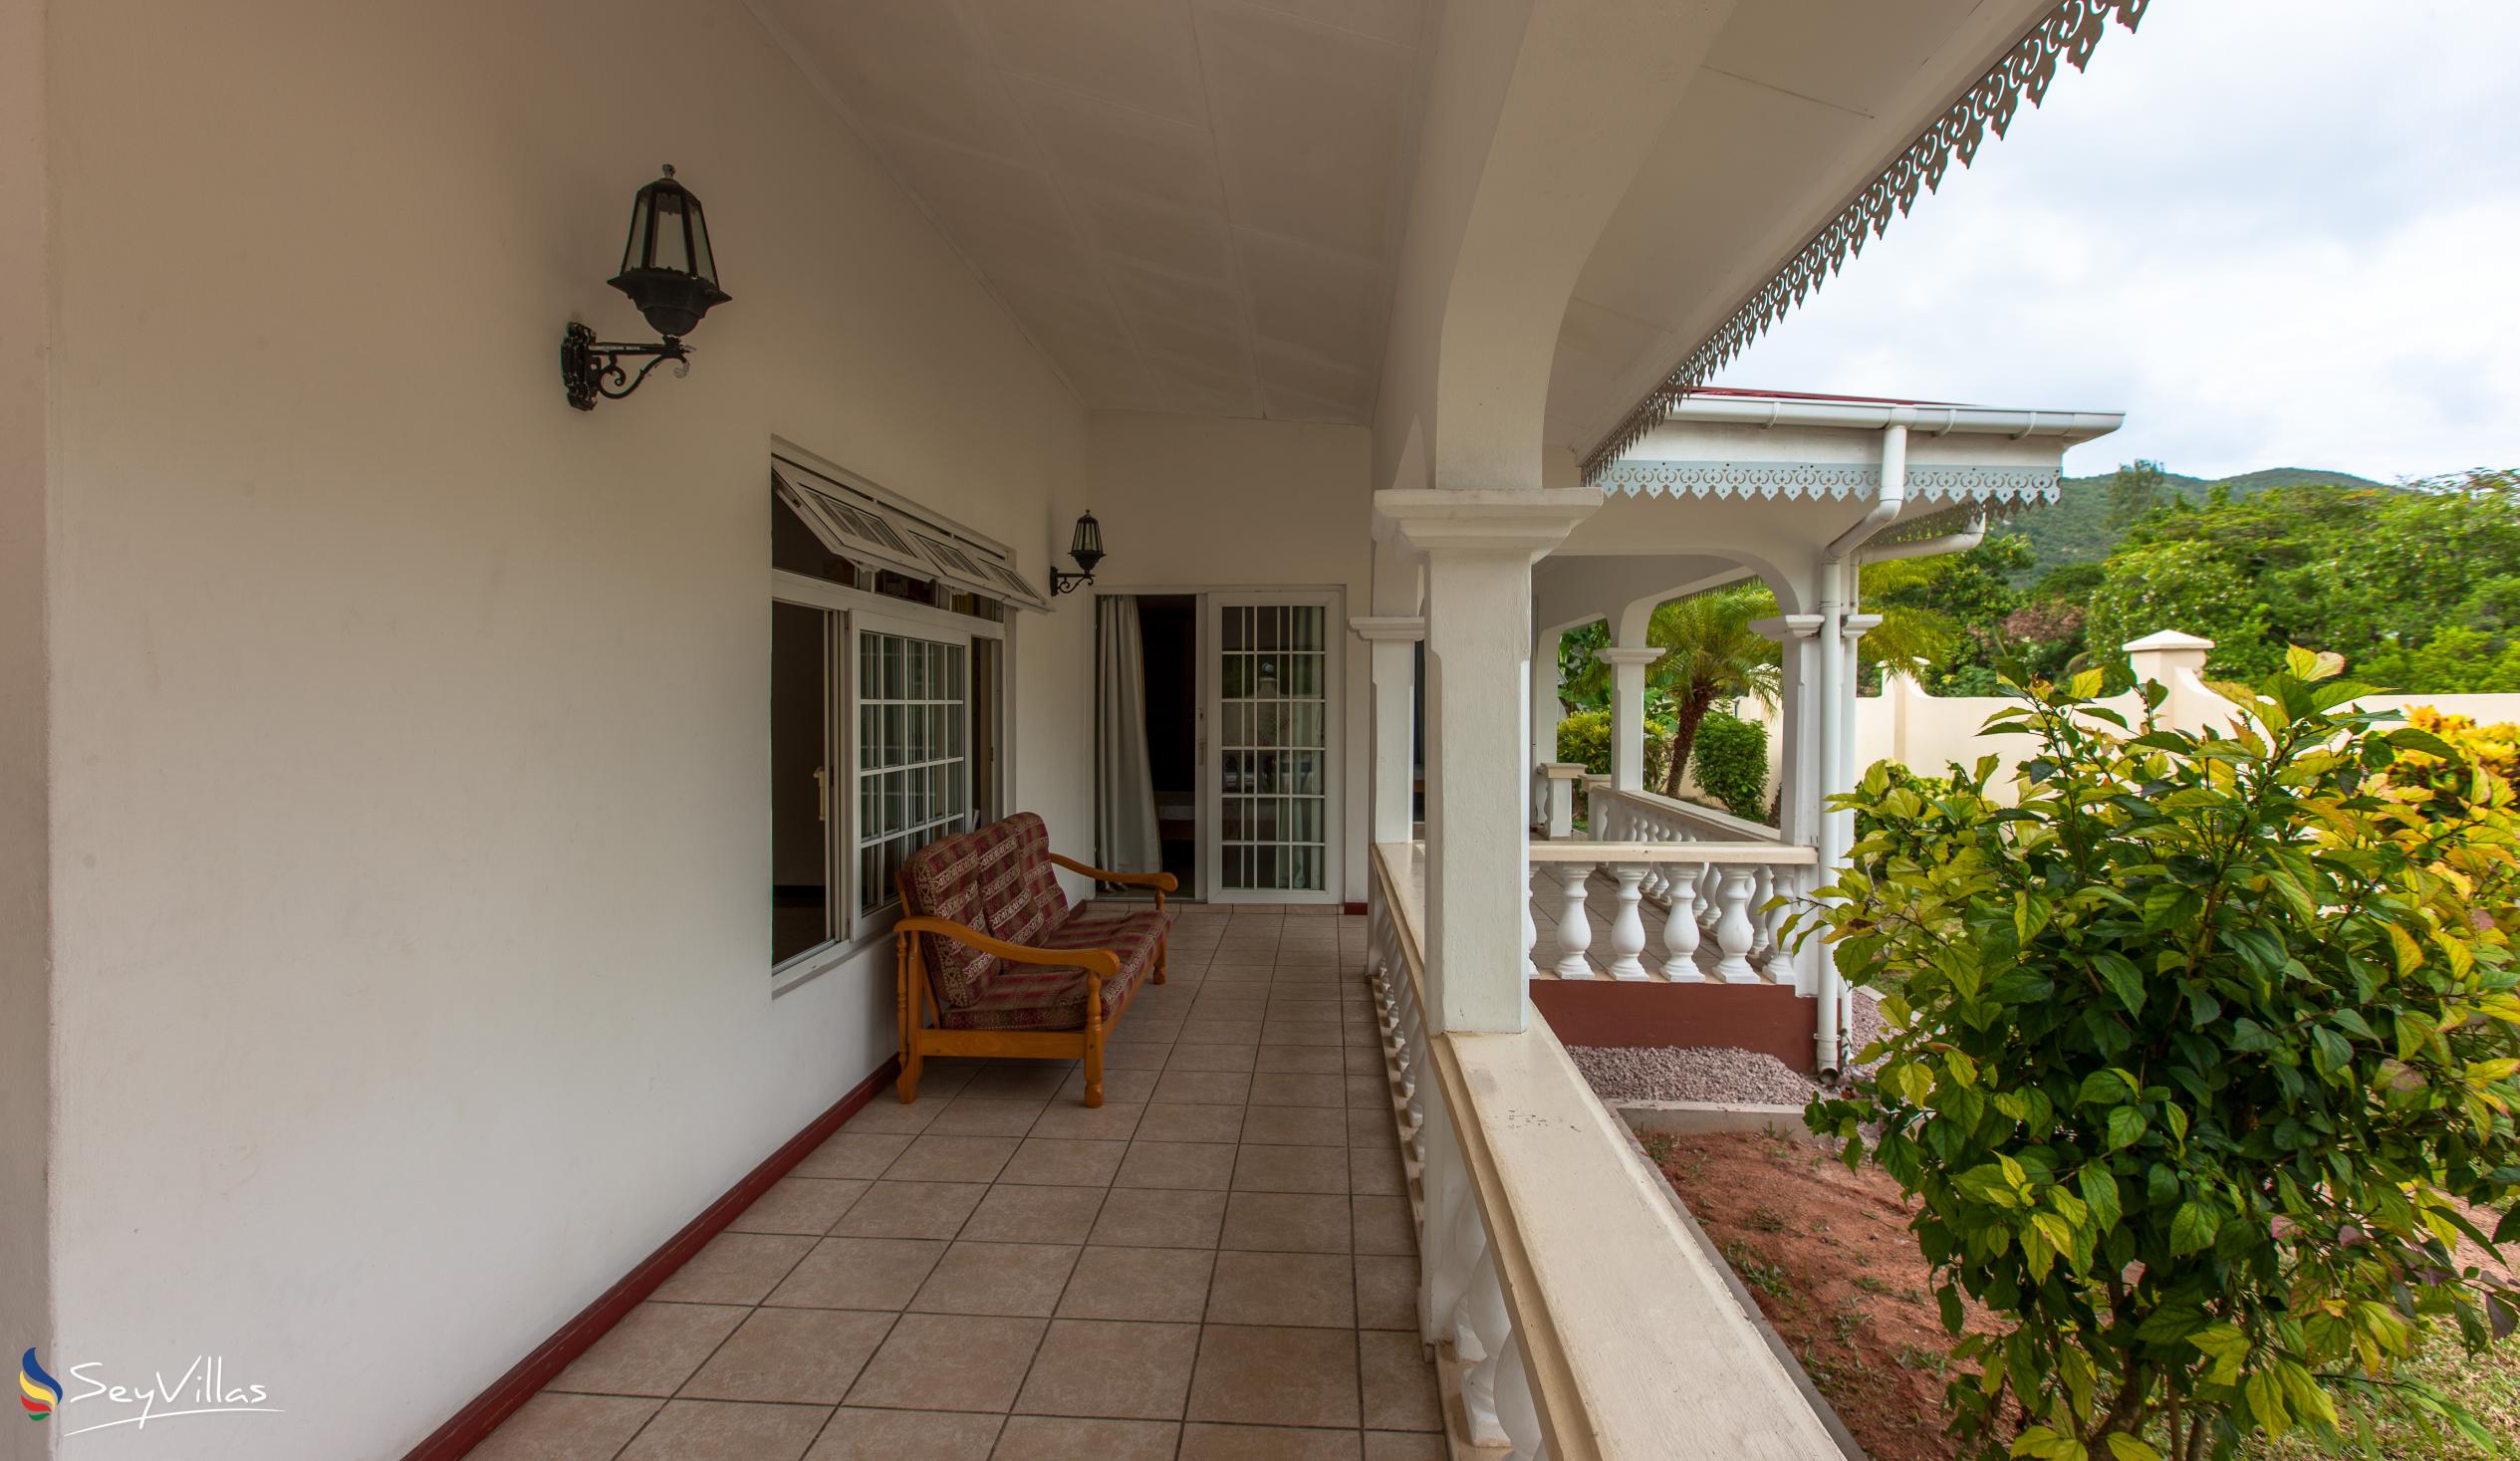 Photo 9: Villa Confort - Outdoor area - Praslin (Seychelles)